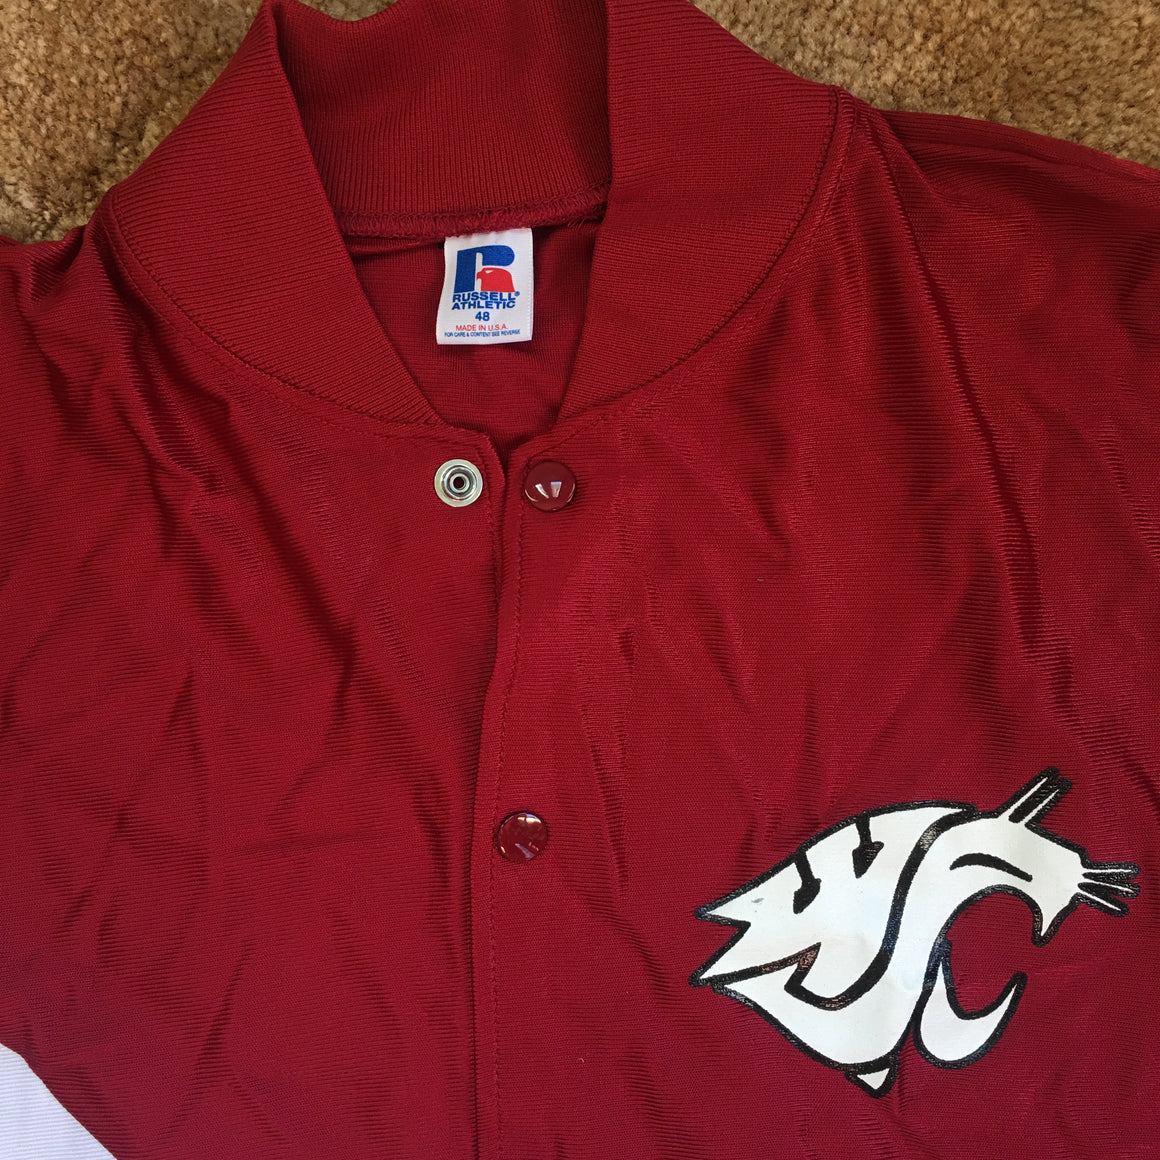 WSU Cougars shooter shirt - XL